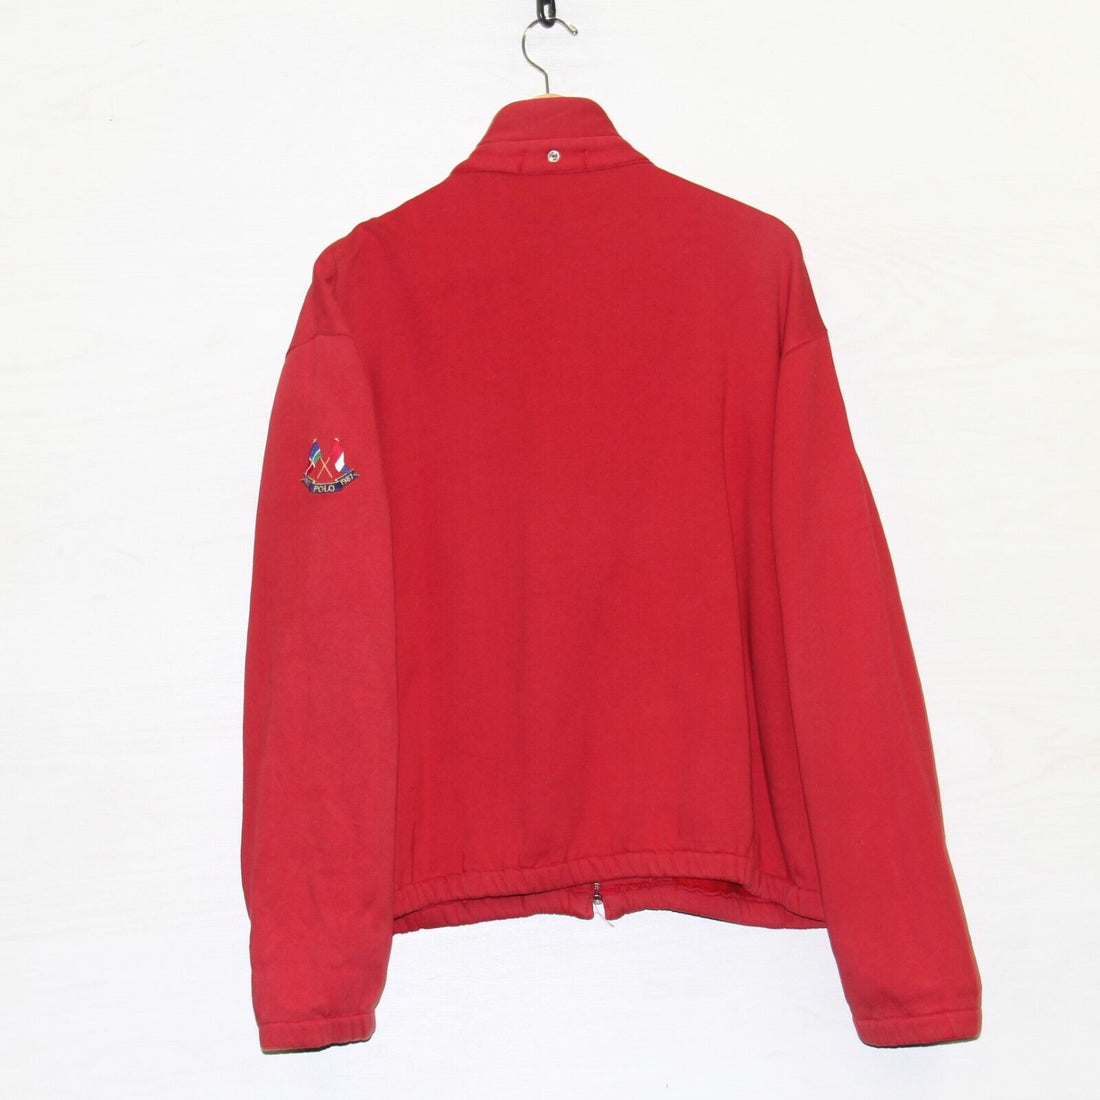 Vintage Polo Ralph Lauren Cross Flags Full Zip Sweatshirt Size Medium Red